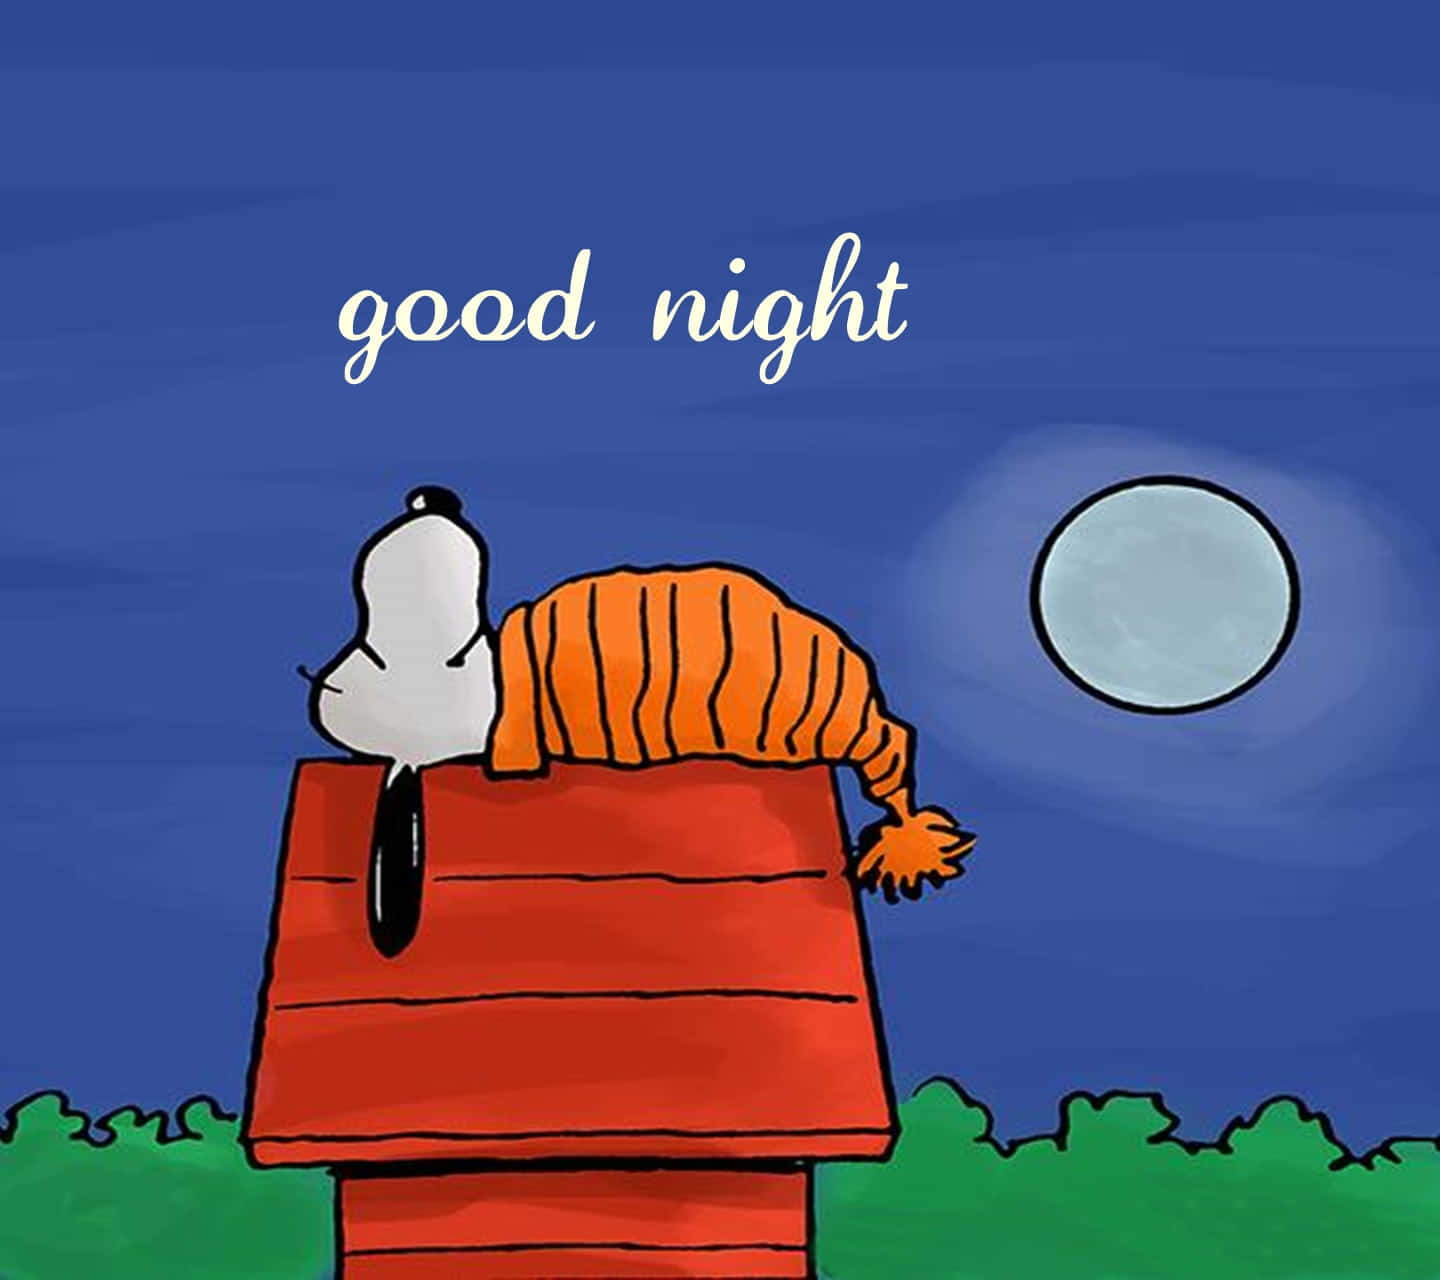 Imagende Buenas Noches De Snoopy